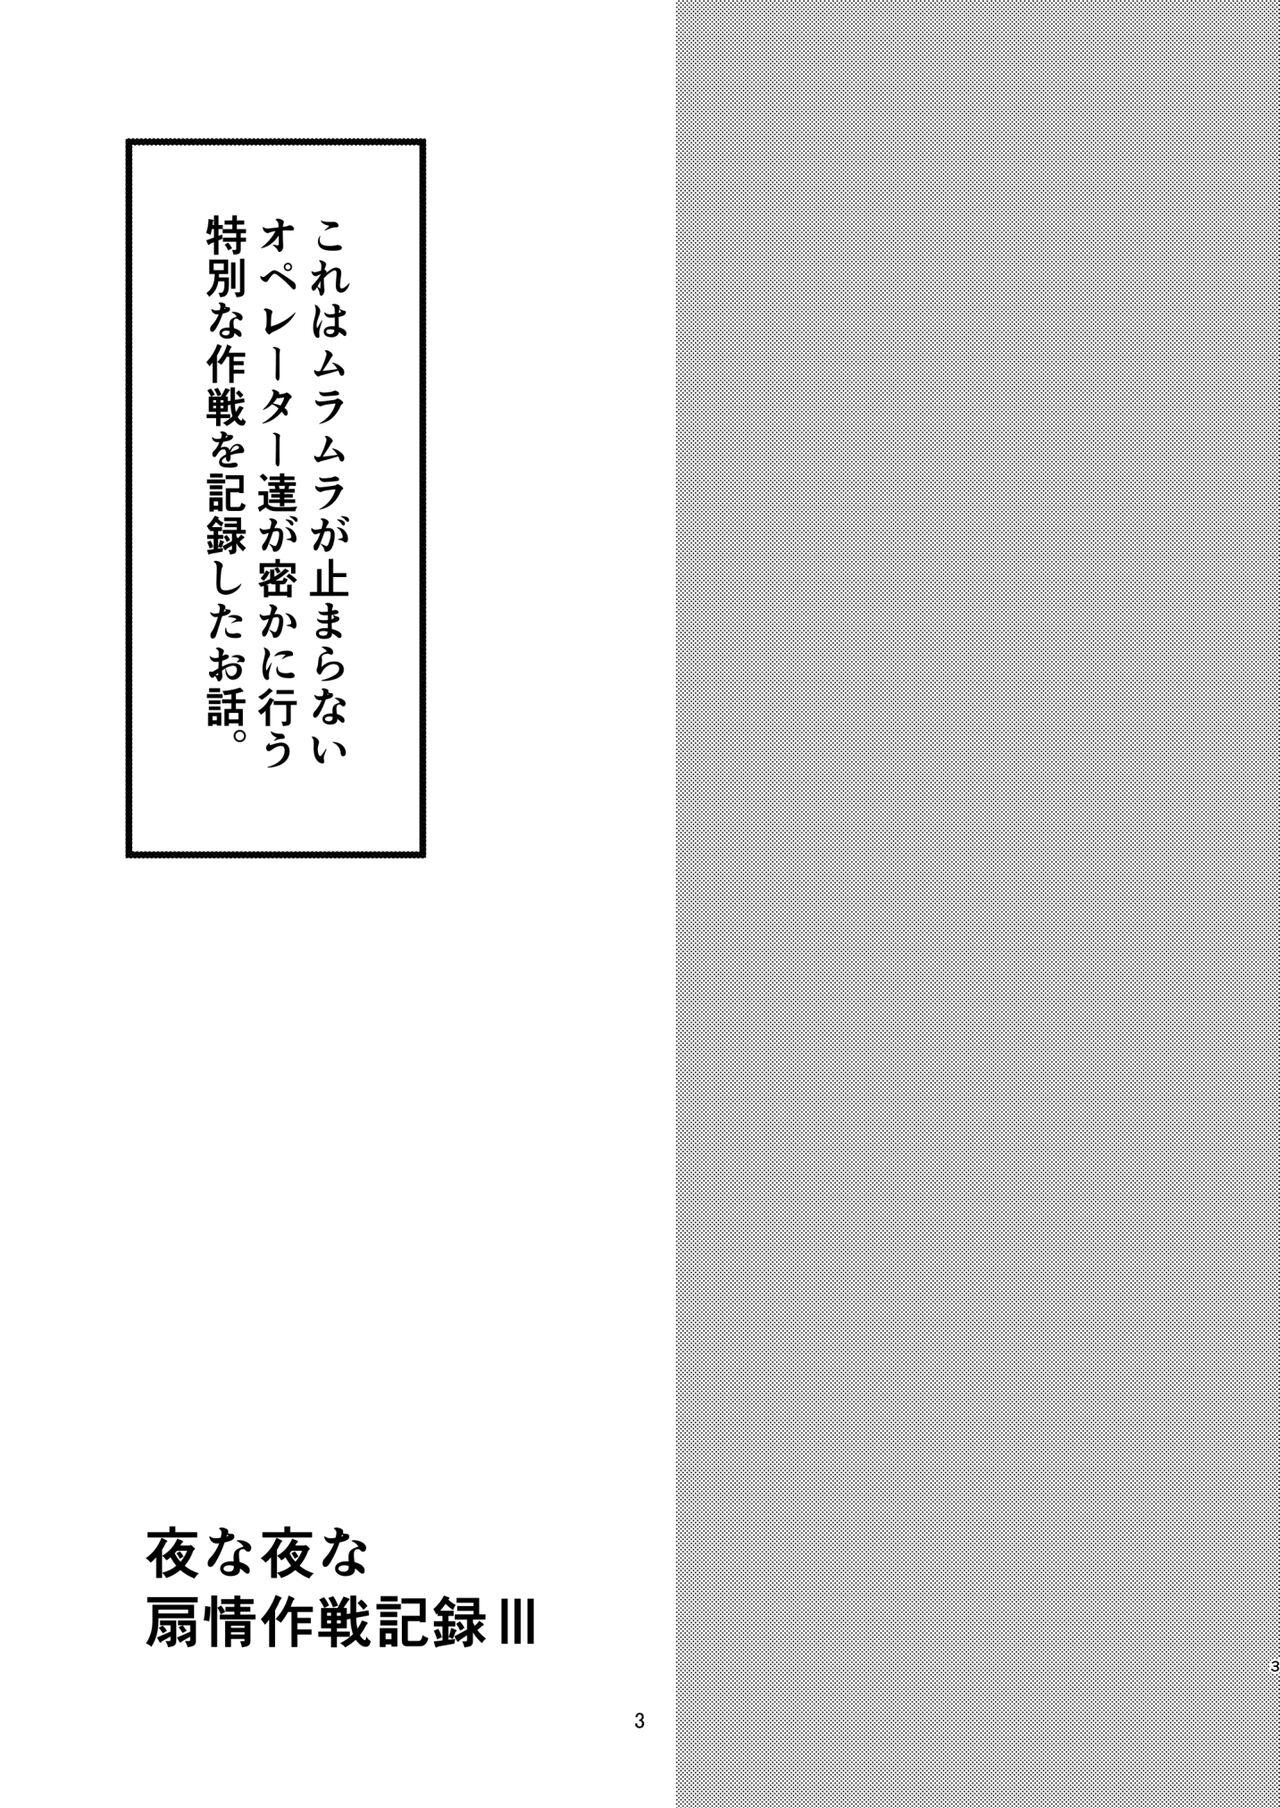 Hardcore Yona Yona Senjou Sakusen Kiroku III - Arknights Amigos - Page 3